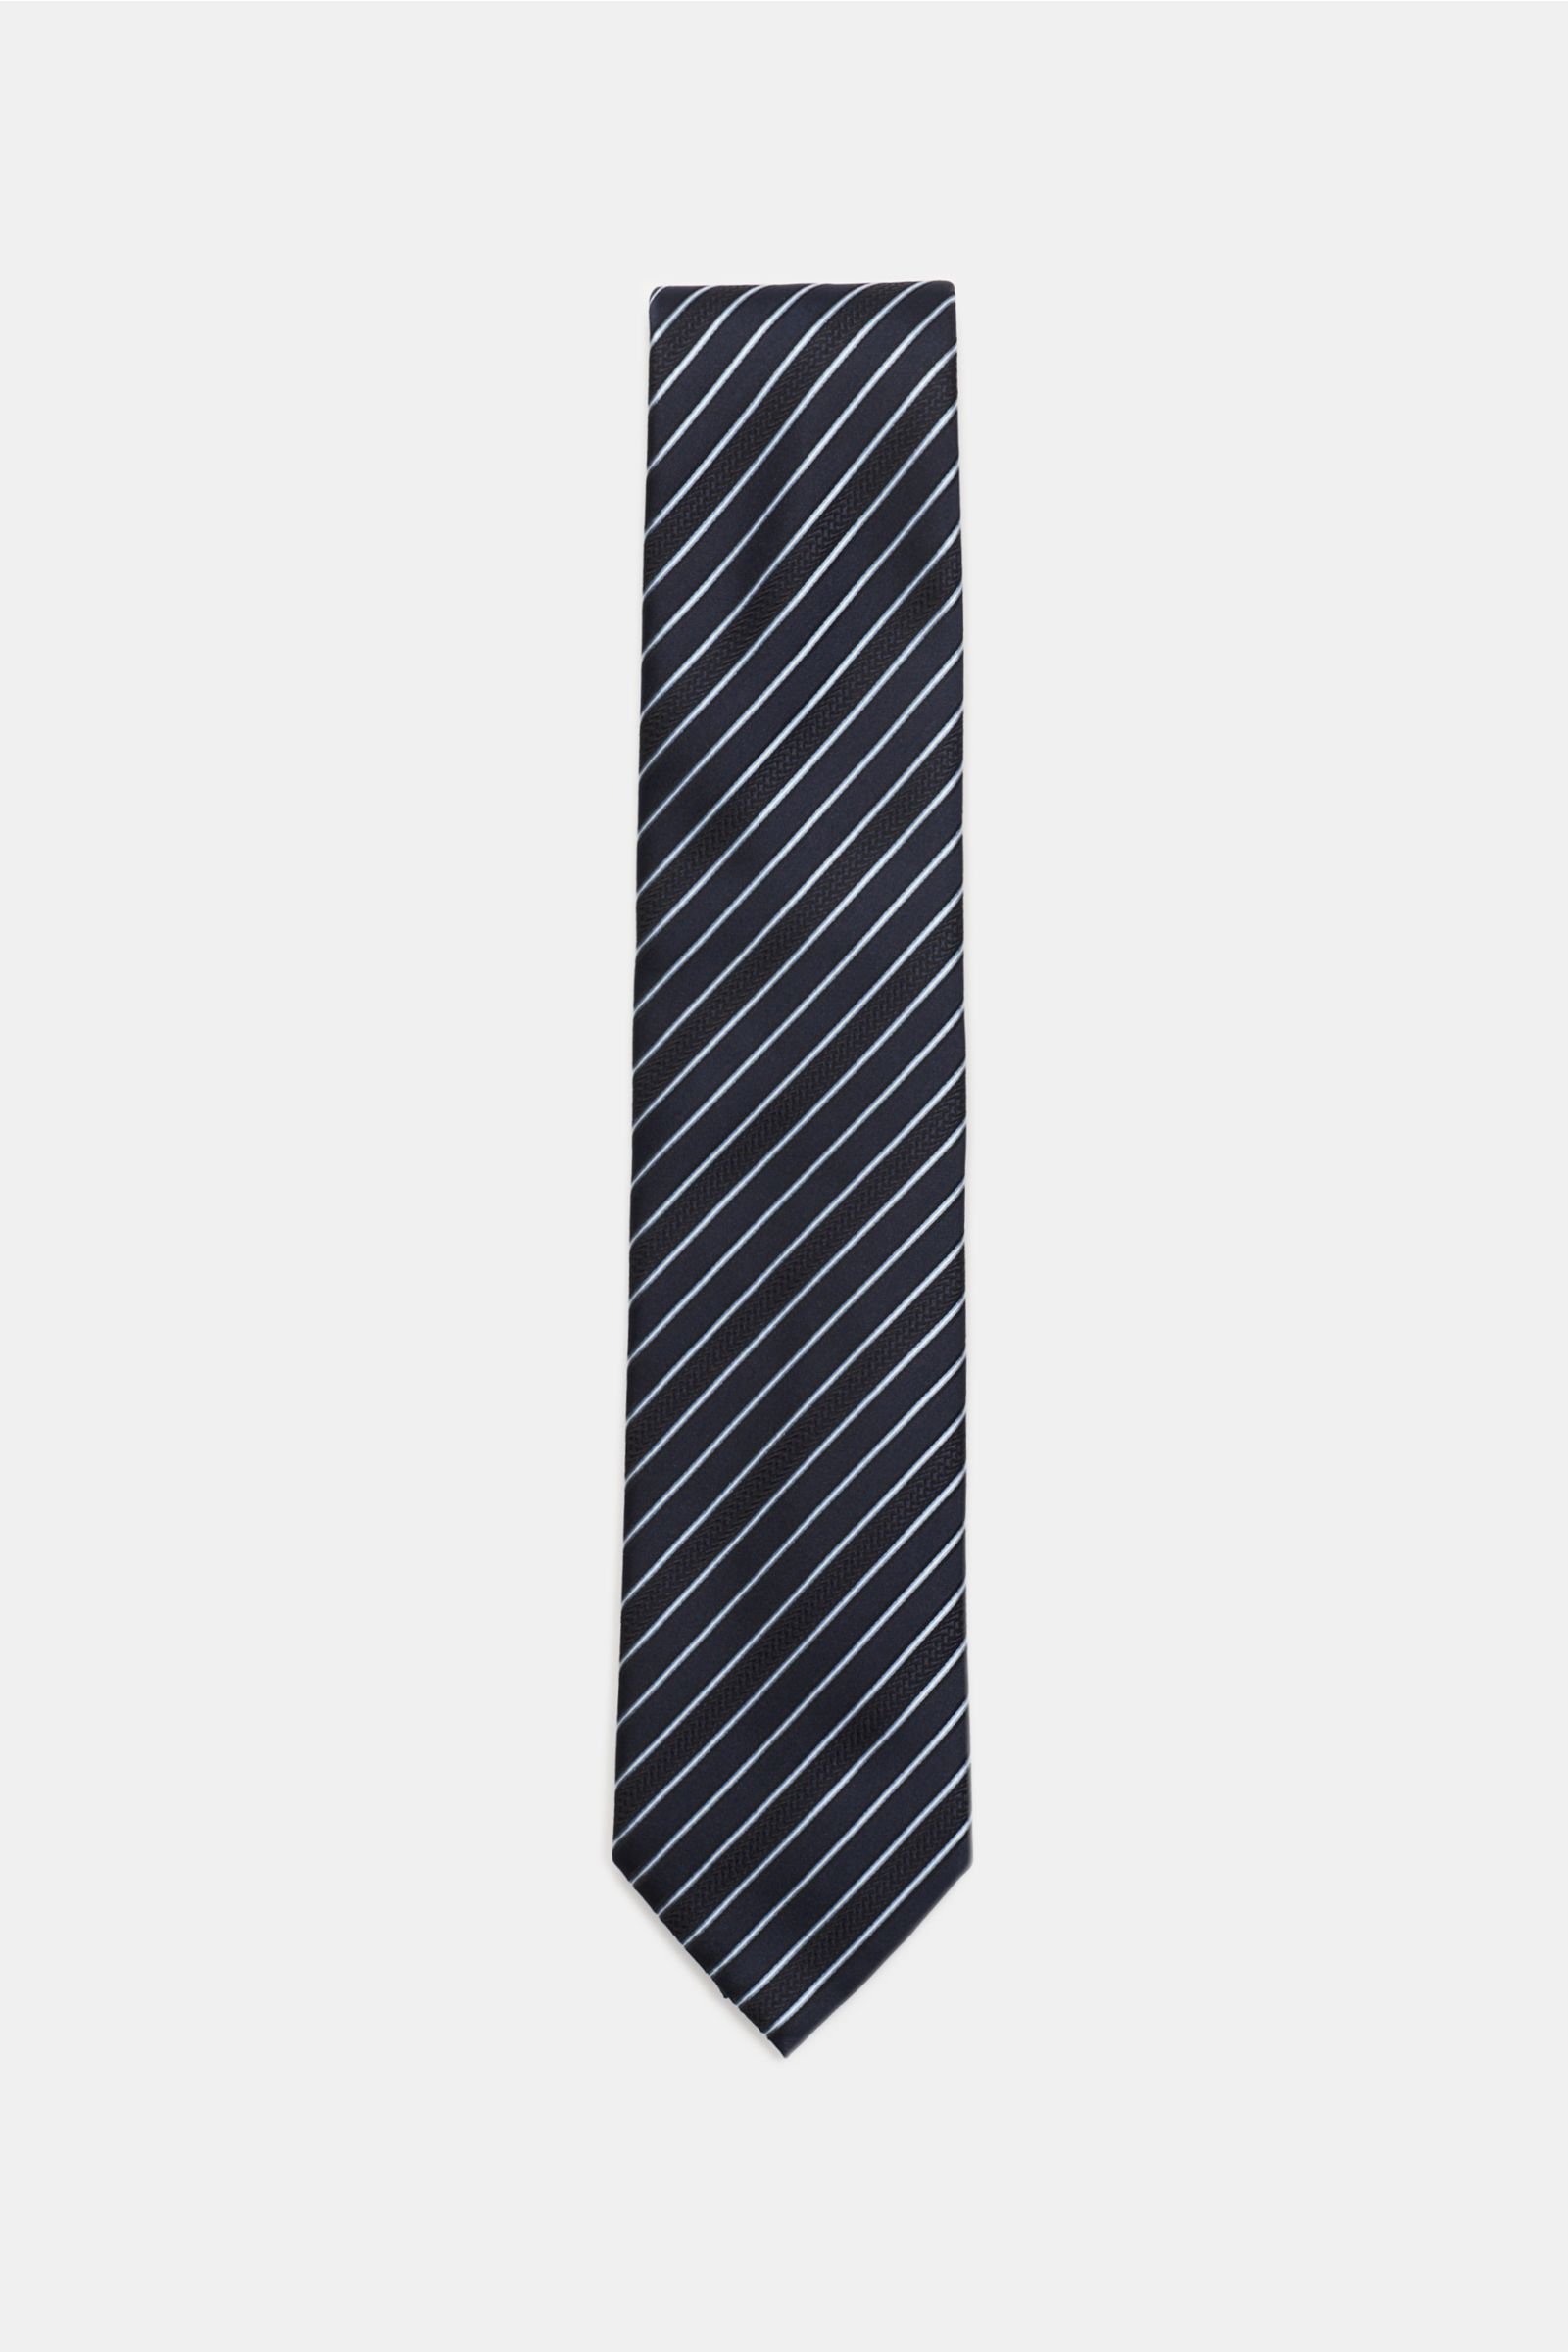 Silk tie navy striped